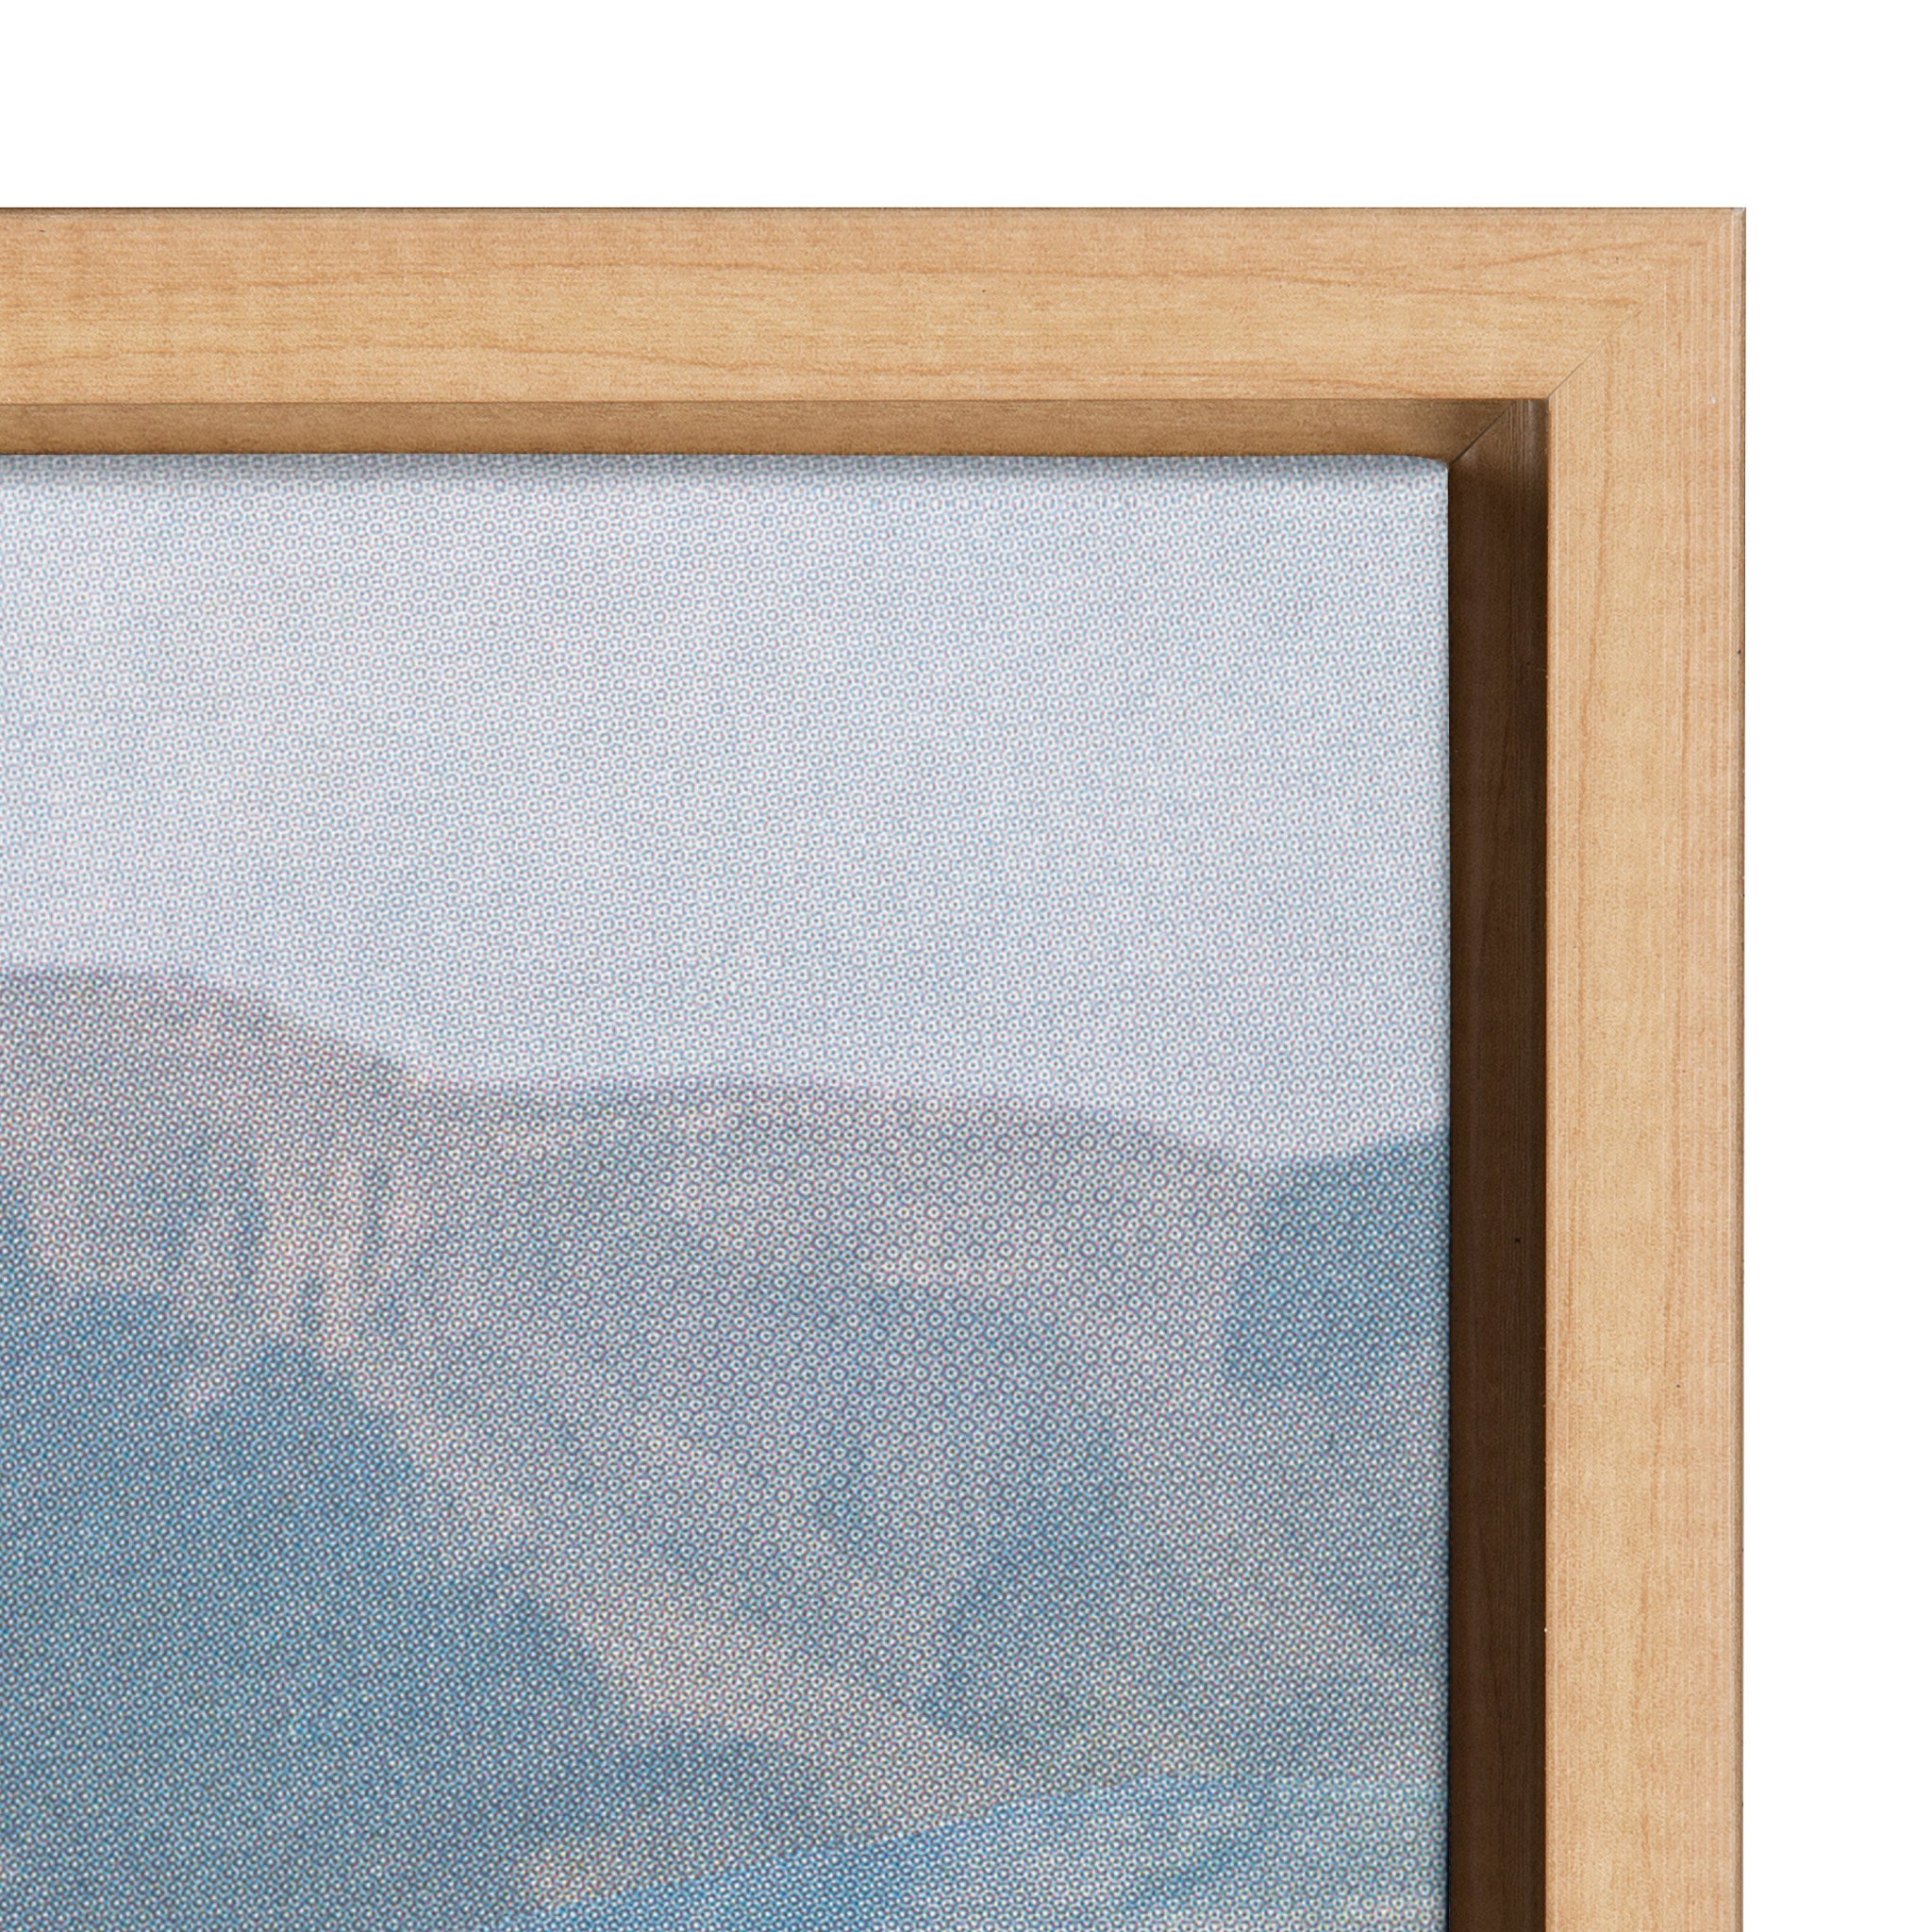 Sylvie Desert Mirage Framed Canvas by Sarah Eisenlohr